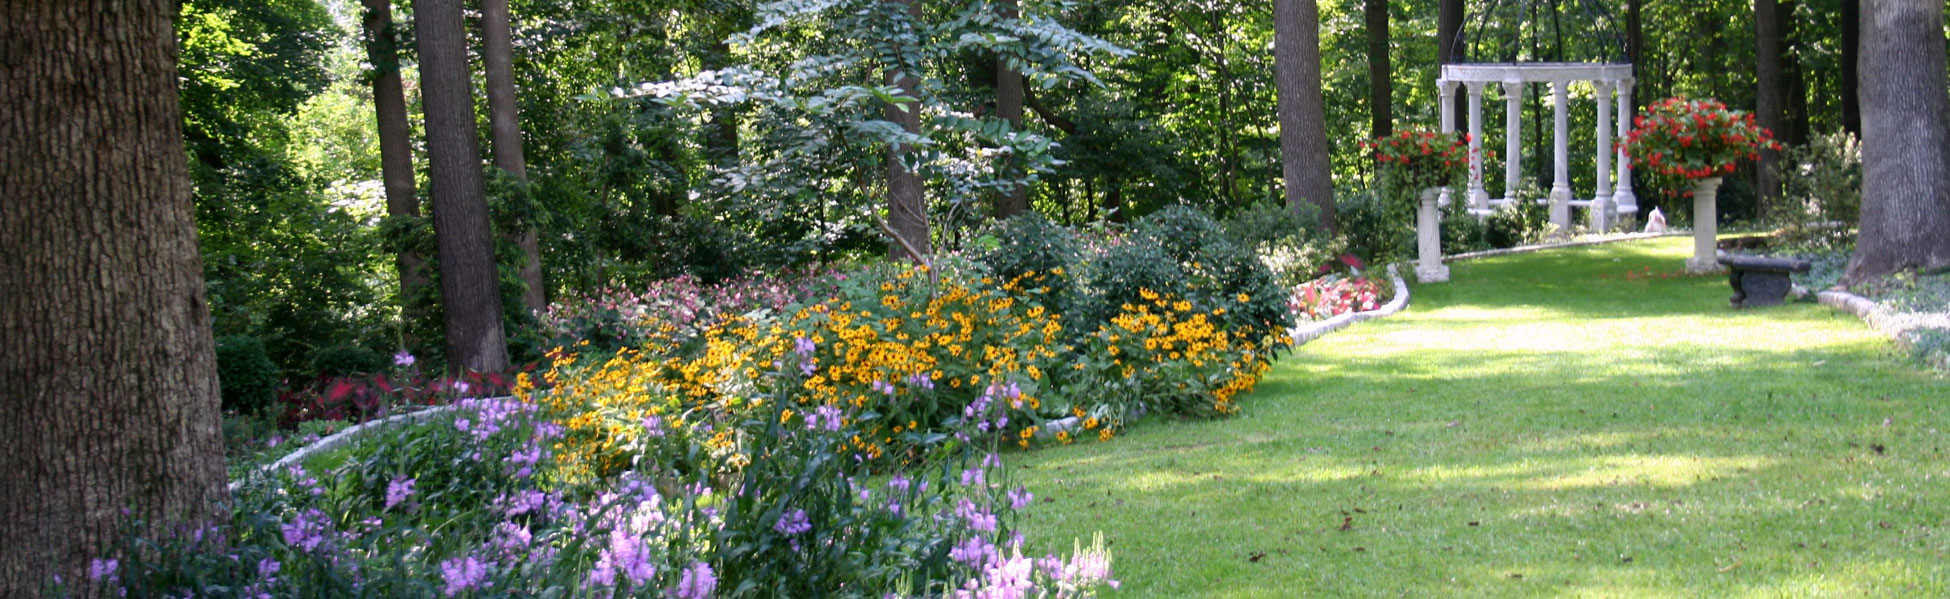 gramercy mansion summer shade garden with gazebo